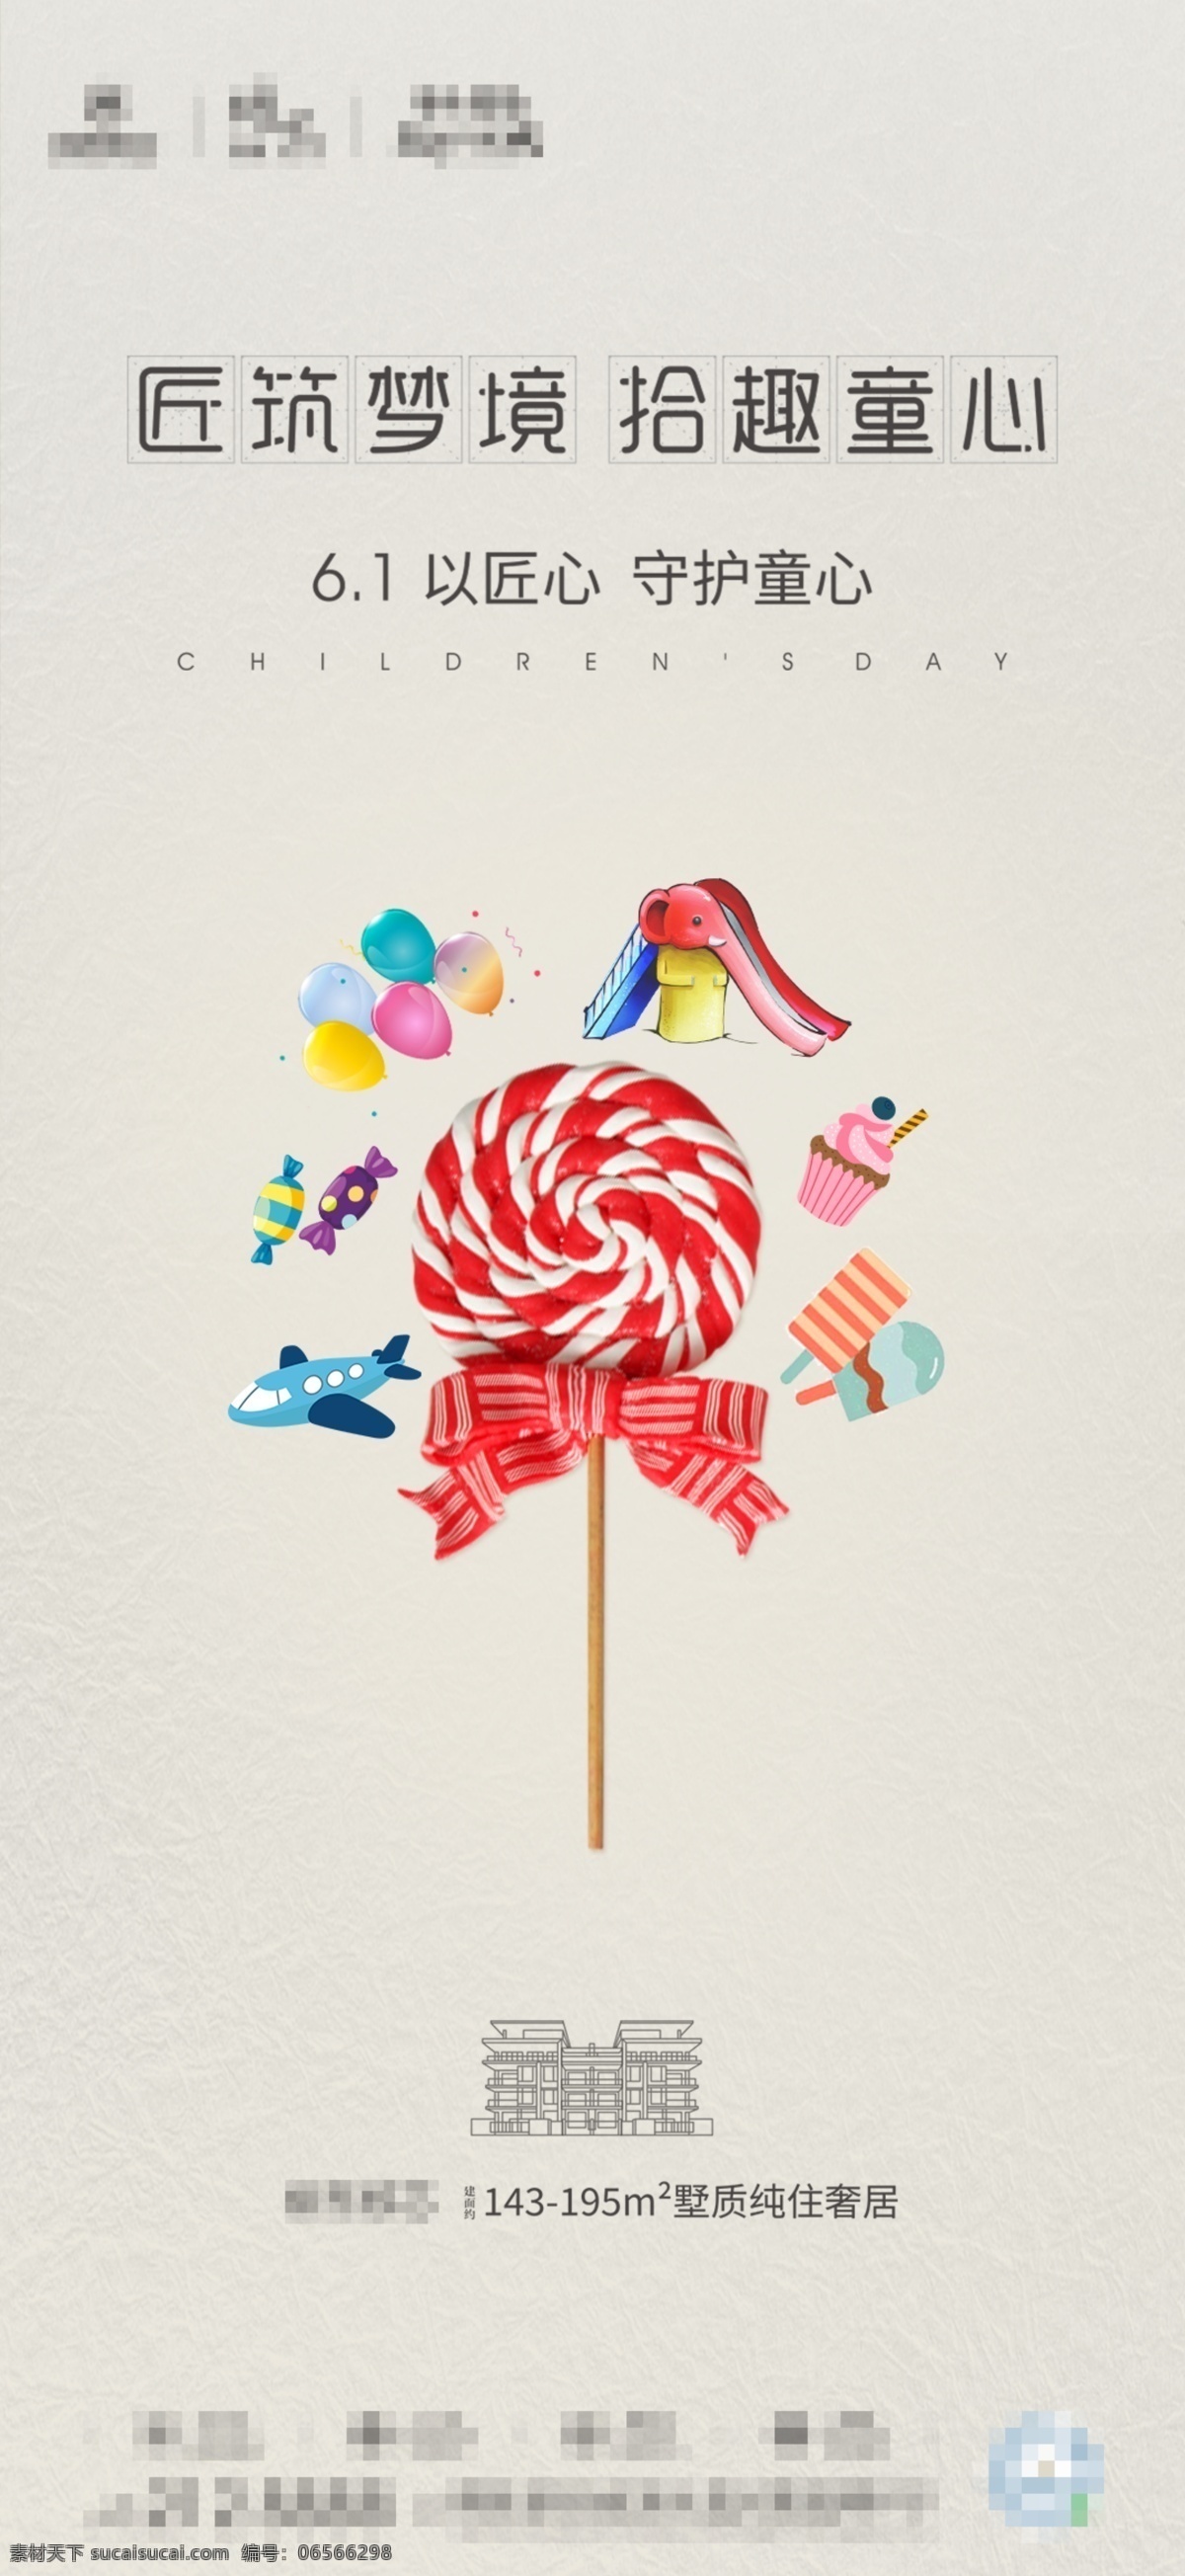 节日海报 六一 地产 棒棒糖 玩具 节日 节气 红色 黄色 夏日 冰淇淋 飞机 海报 儿童玩具 气球 零食